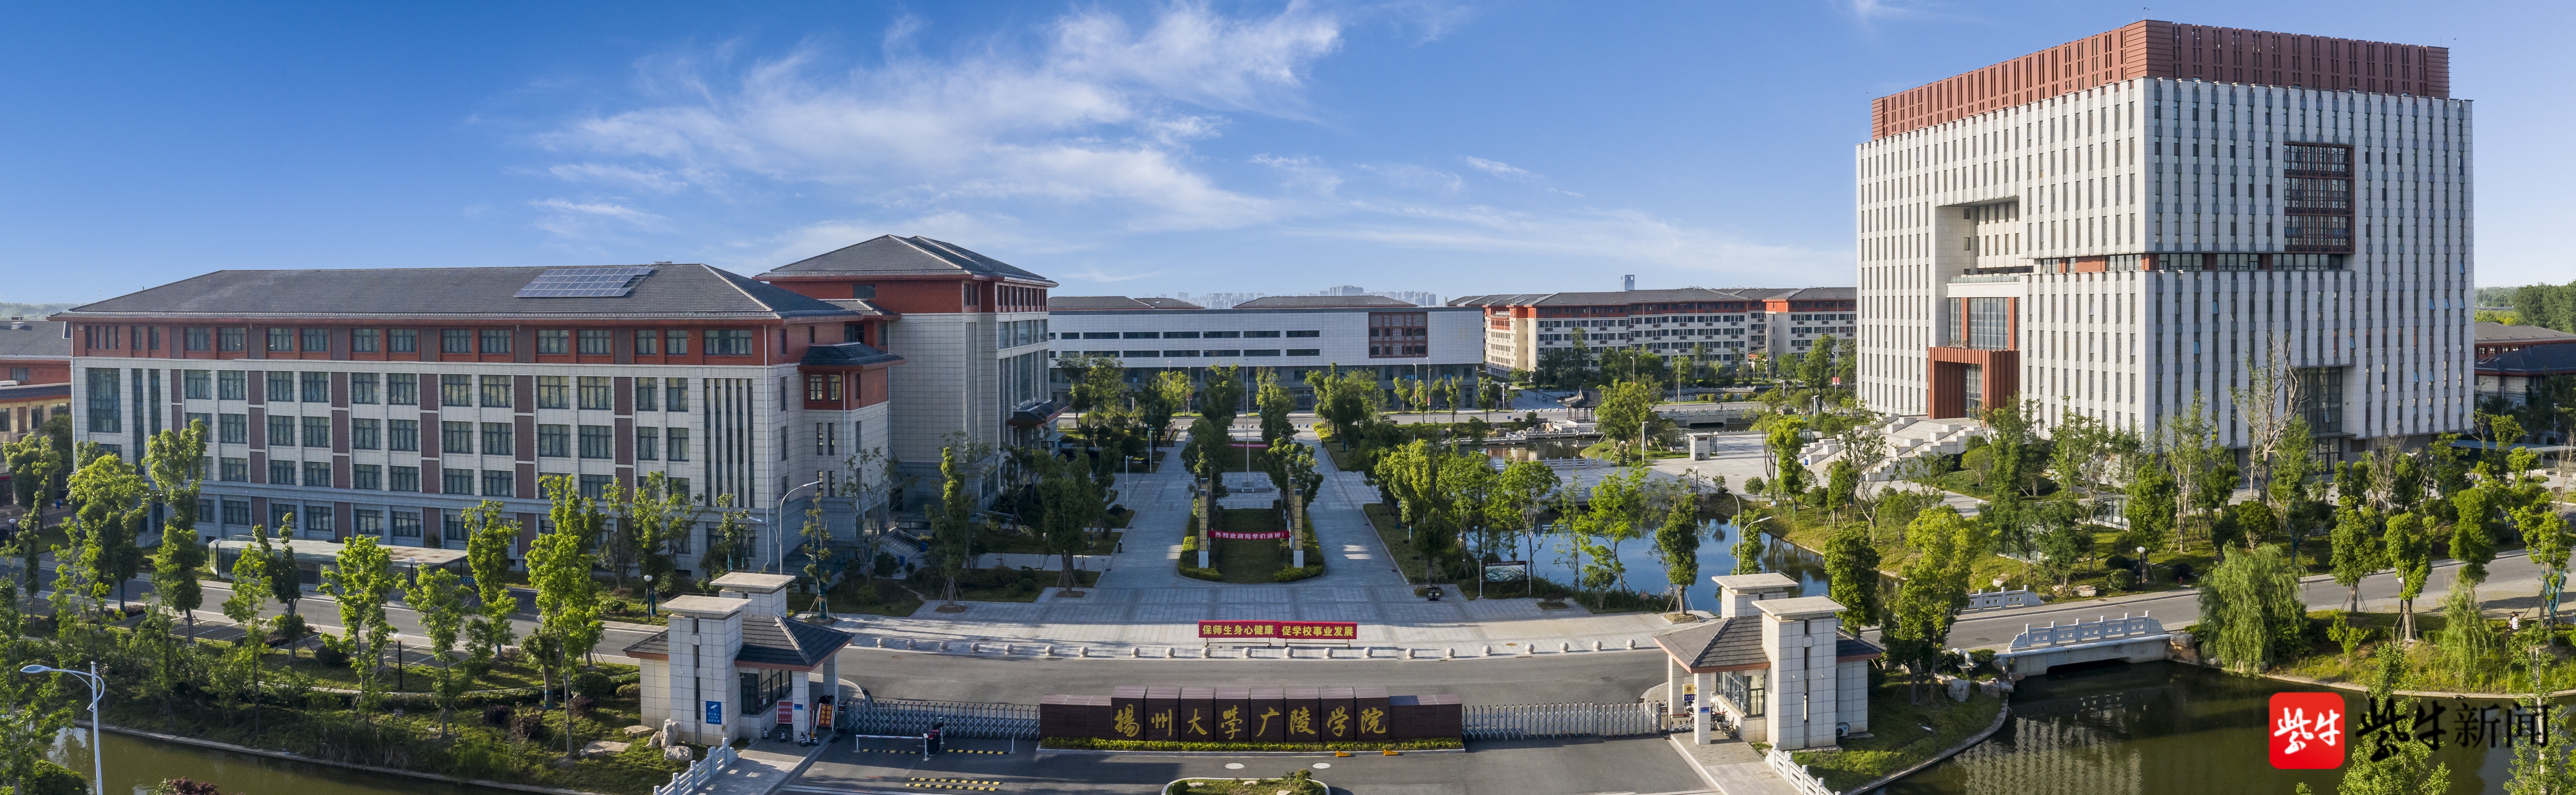 2021江苏好大学联盟| 扬州大学广陵学院:面向全国招生计划2800多名